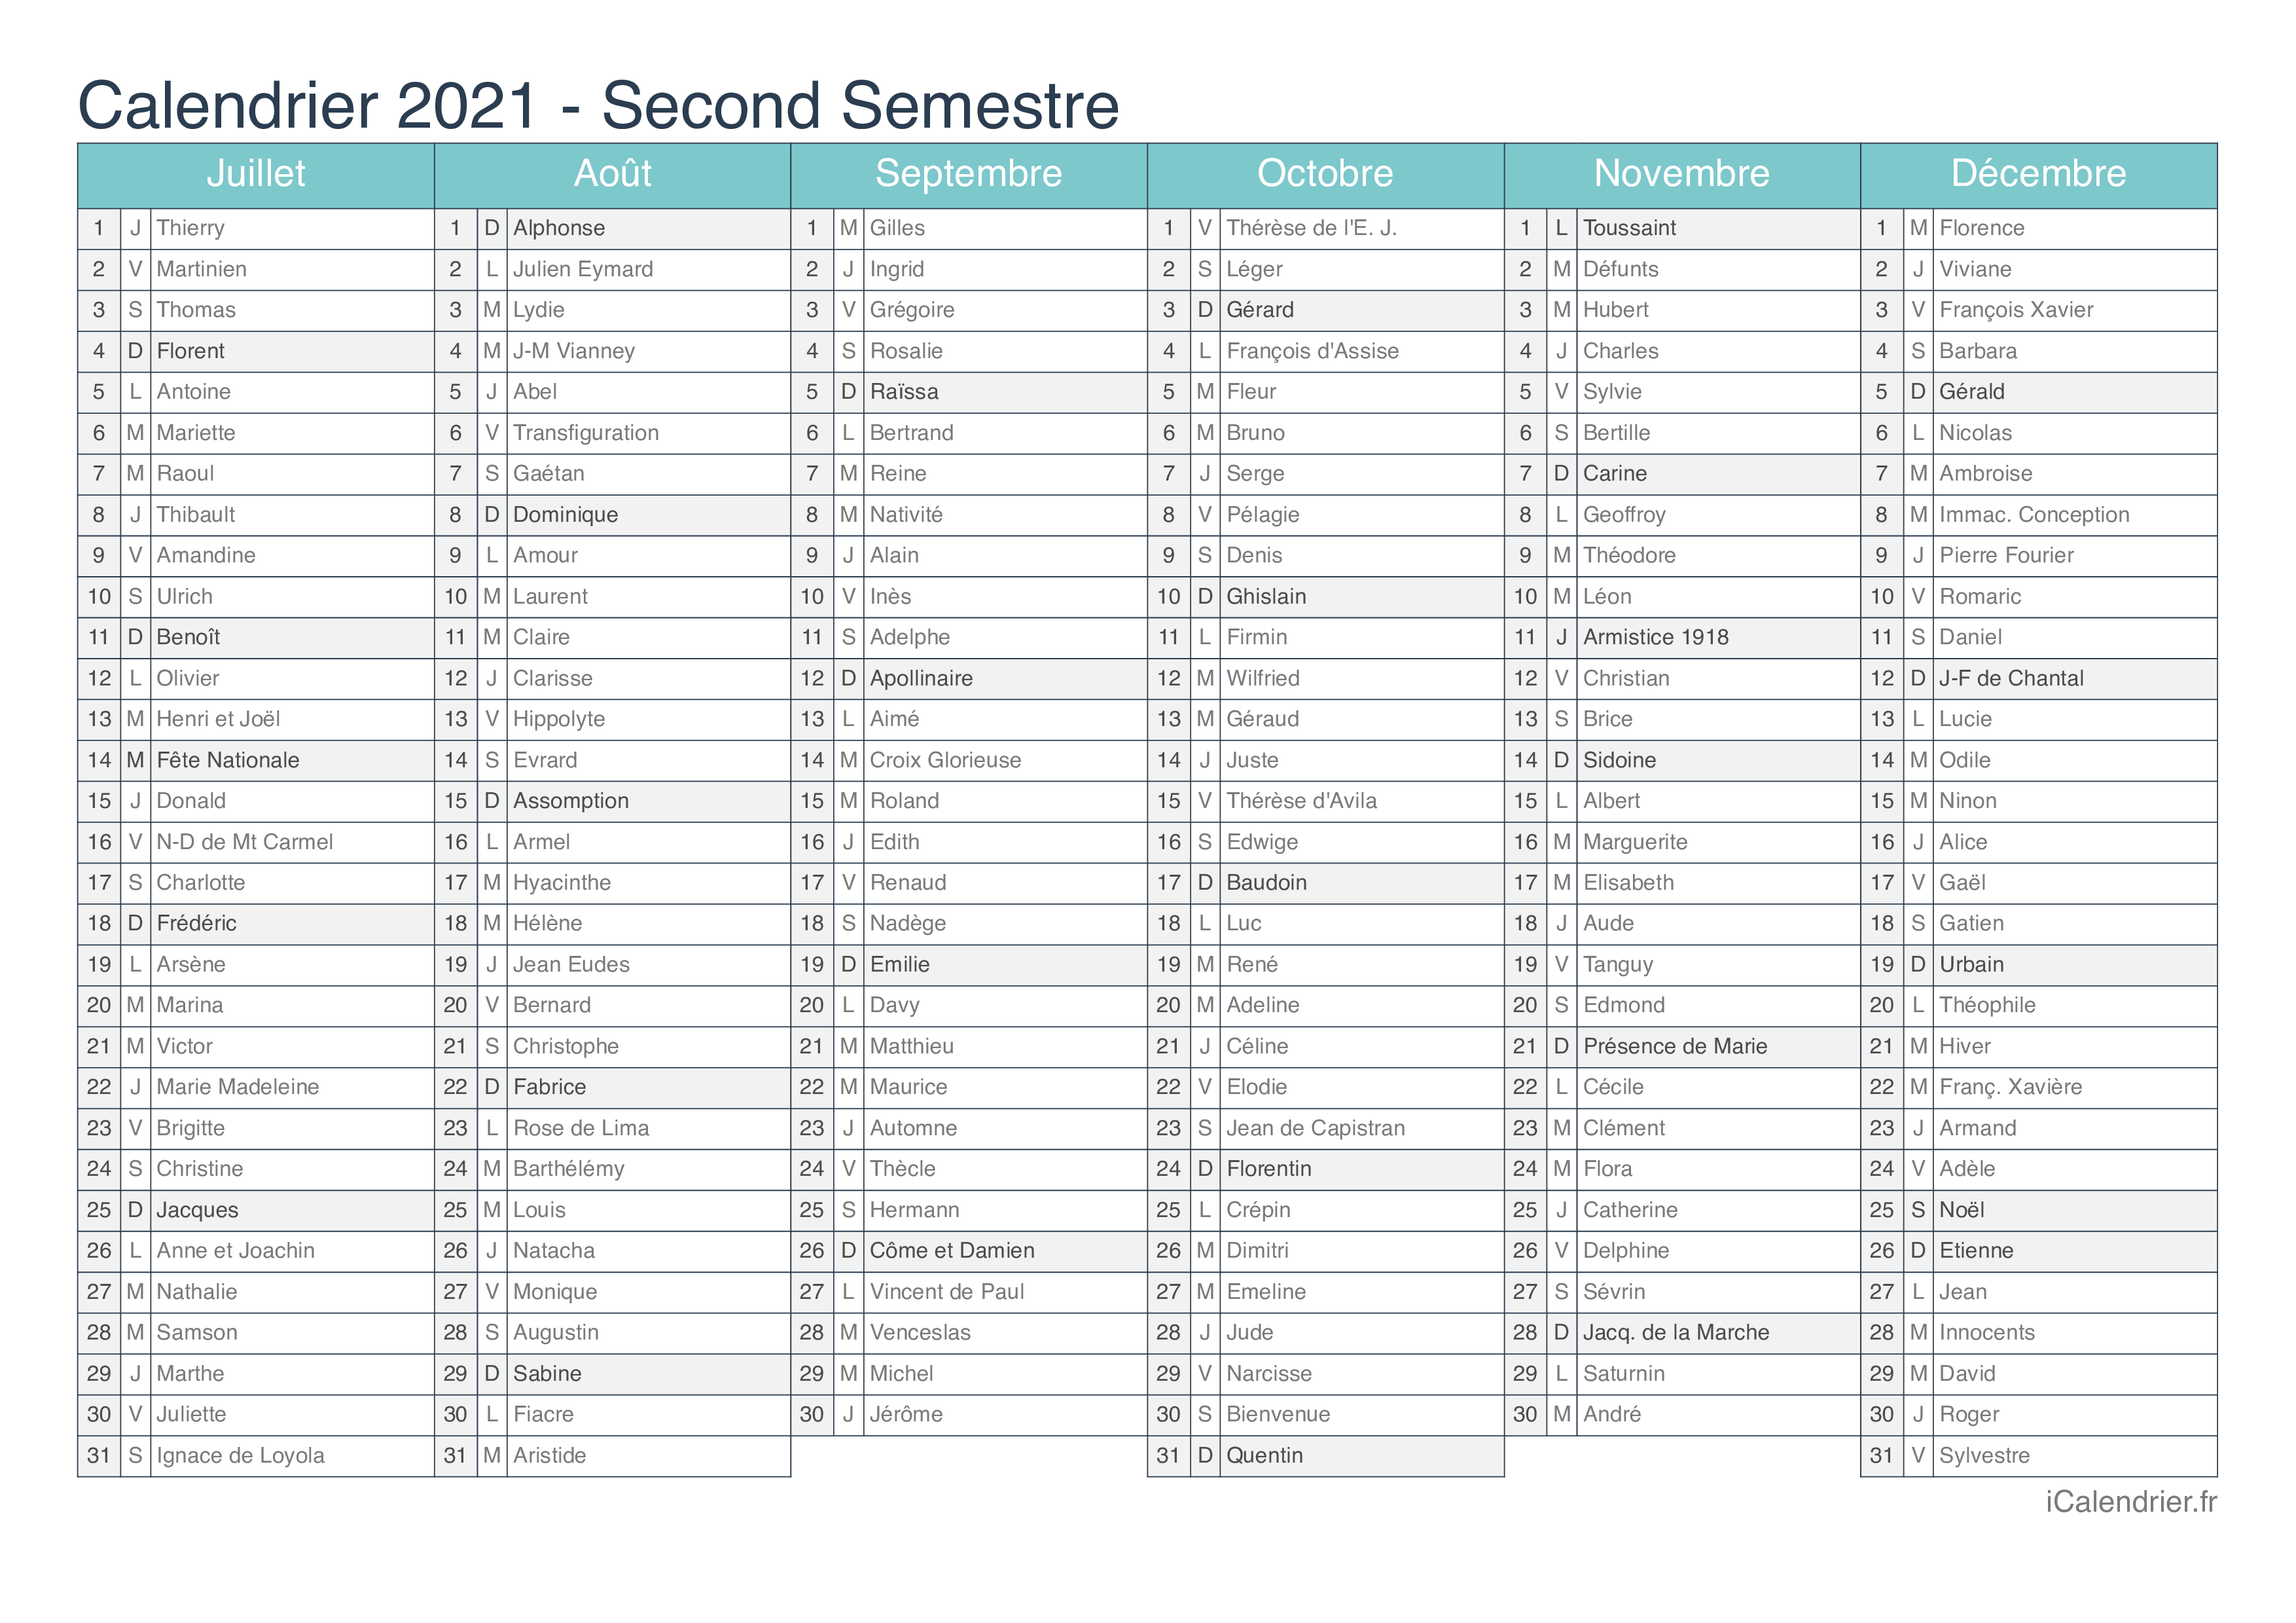 Calendrier 2021 Avec Les Fêtes Calendrier 2021 à imprimer PDF et Excel   iCalendrier